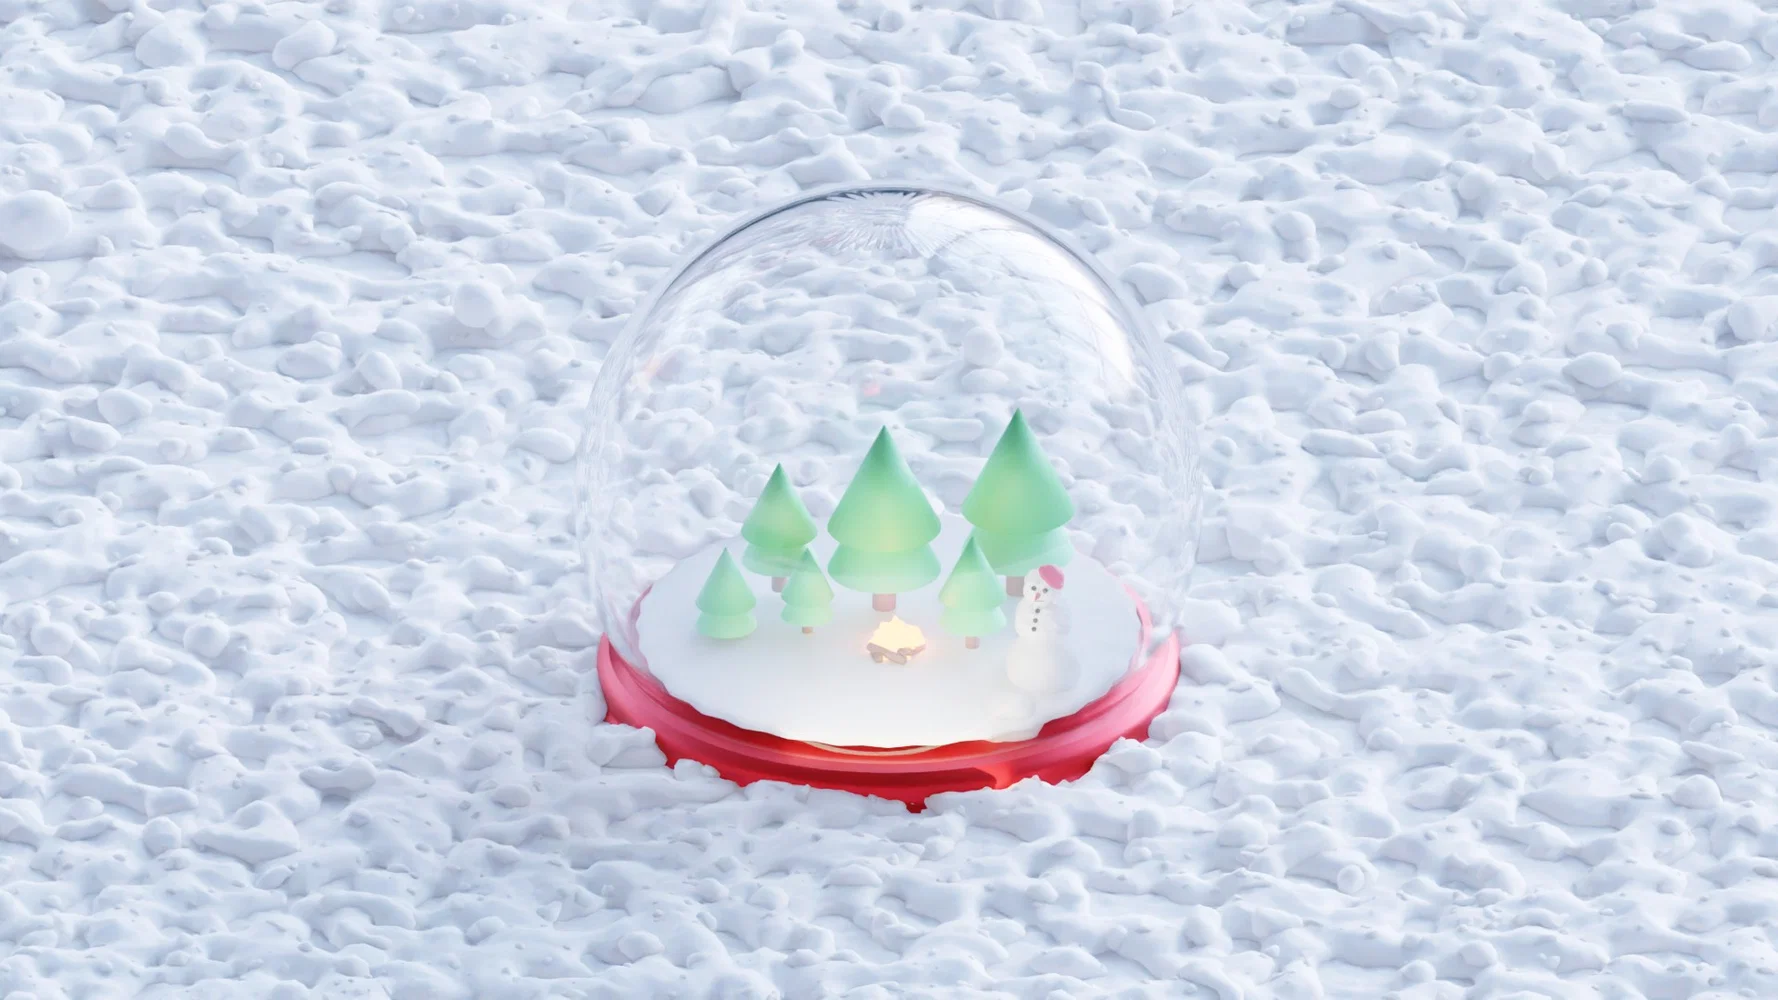 3D Model of a Stylized Snow Globe 